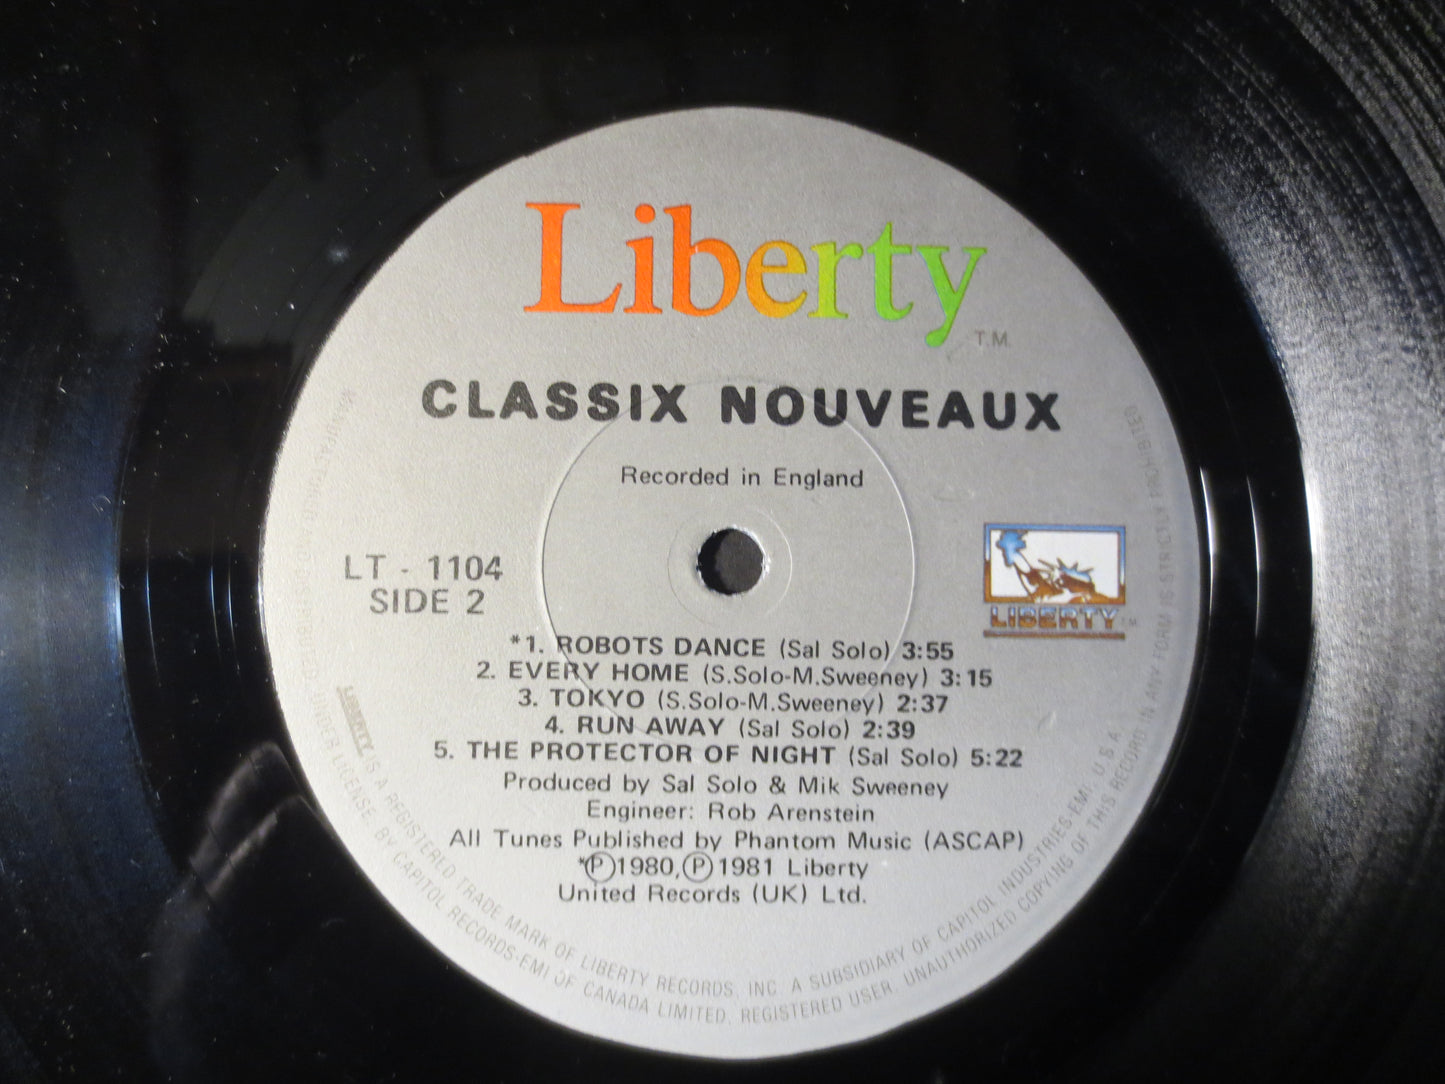 CLASSIX NOUVEAUX, Rock Record, Pop Record, Vinyl Record, Record Vinyl, Vinyl Album, 1981 Records, Records, Vinyl Records